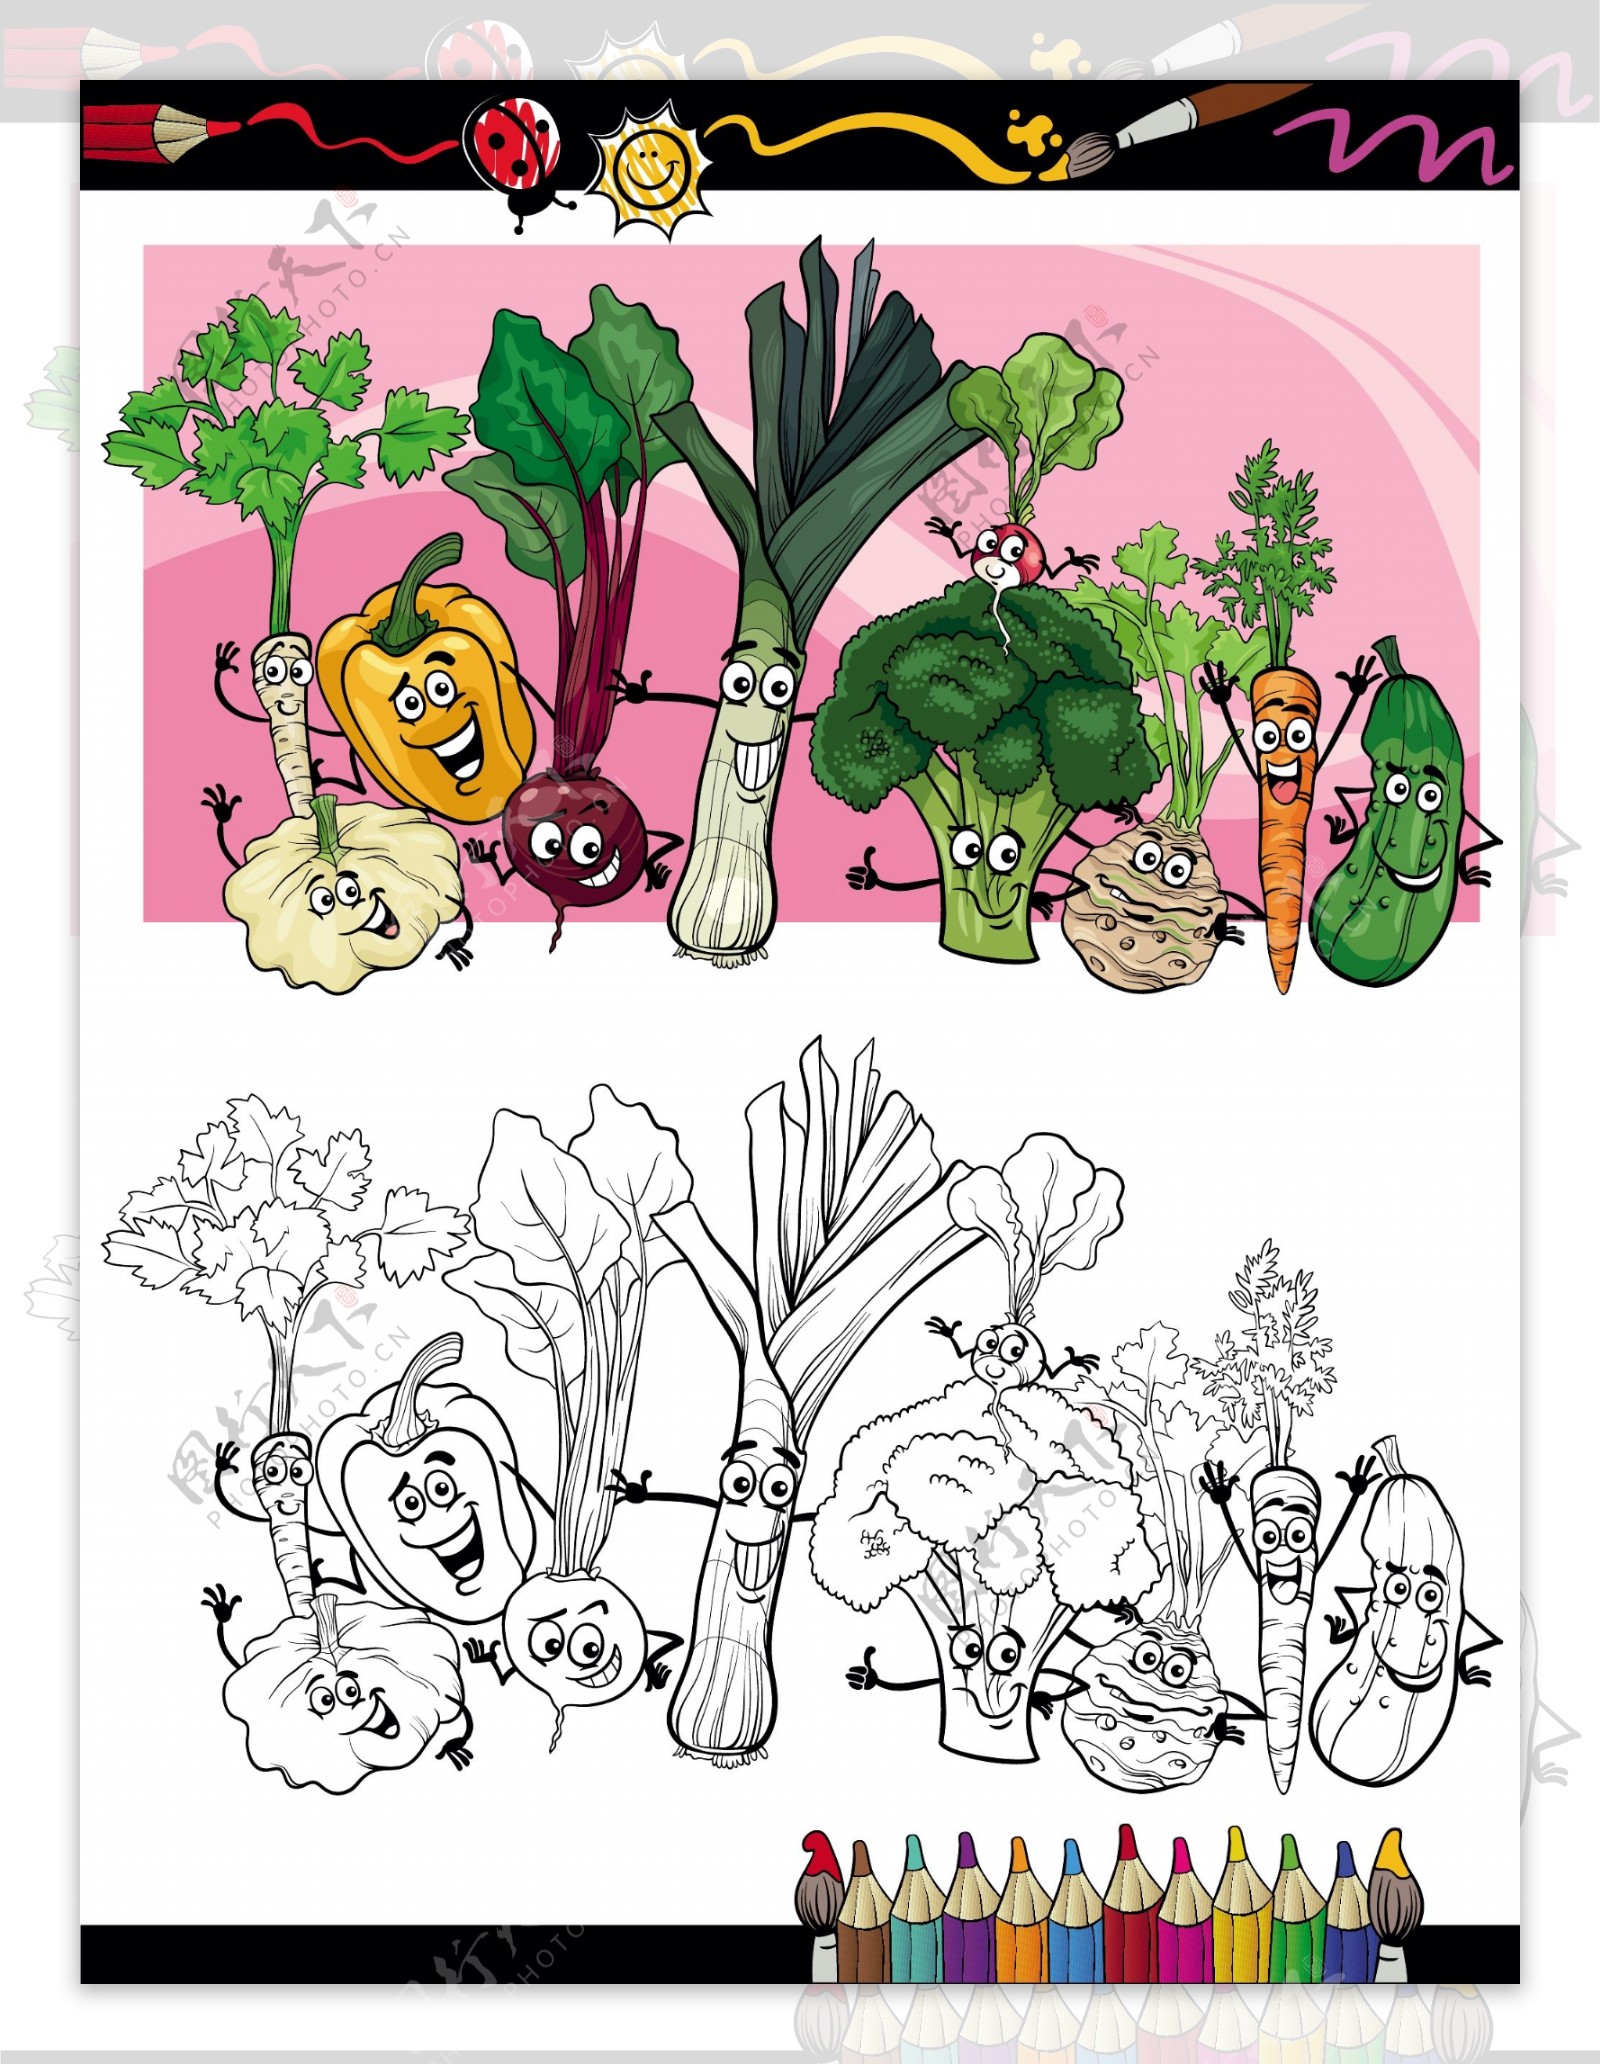 可爱卡通蔬菜人物化主题矢量素材